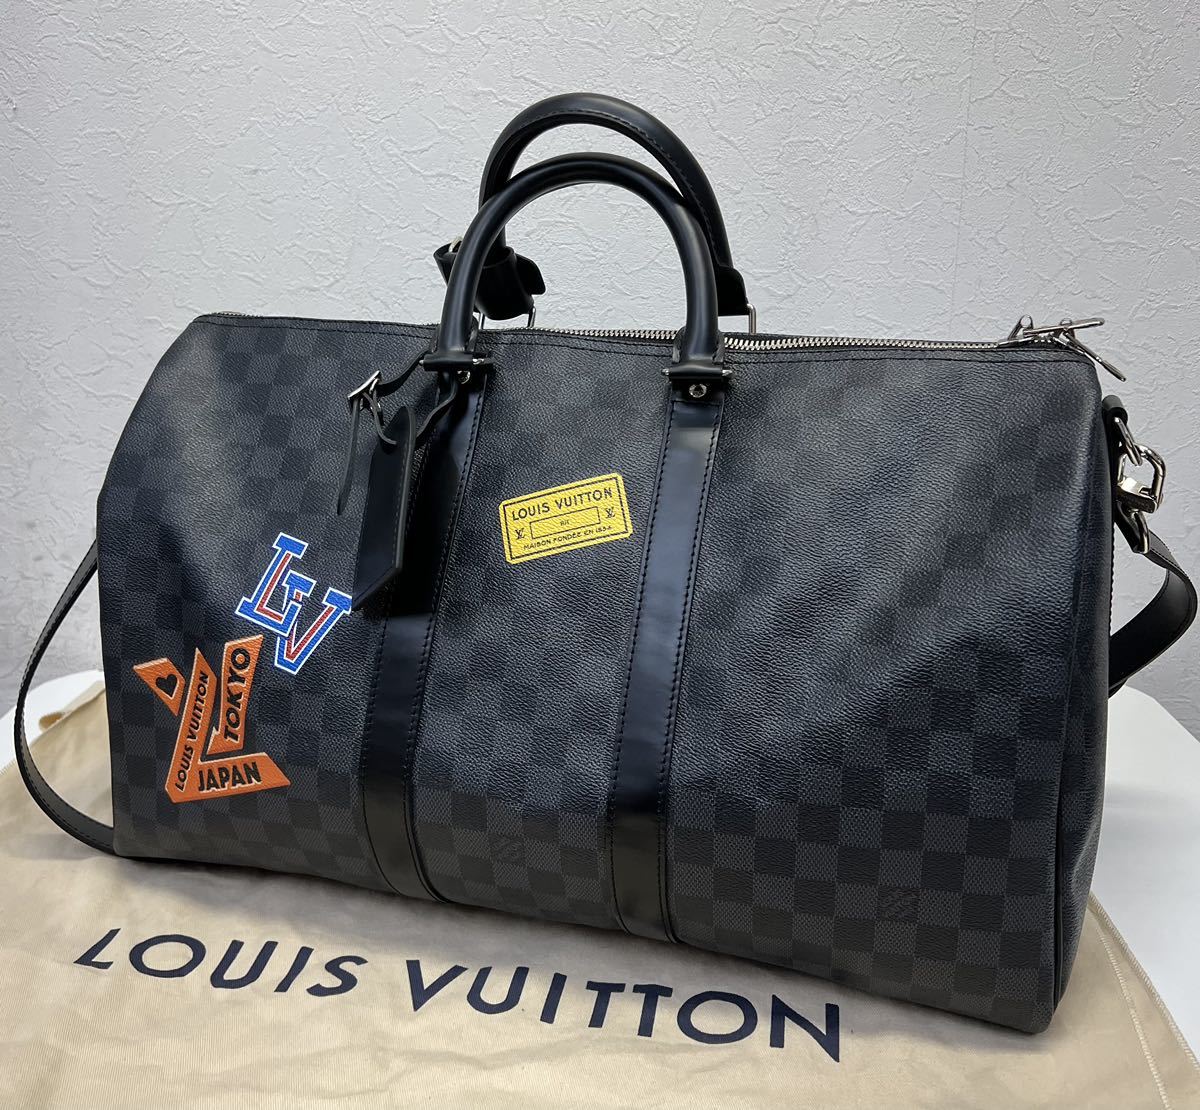 Louis Vuitton Boston bag ルイヴィトン キーポルバンドリエール ボストンバッグ size 45 ブラック 旅行用 カバン 2WAY